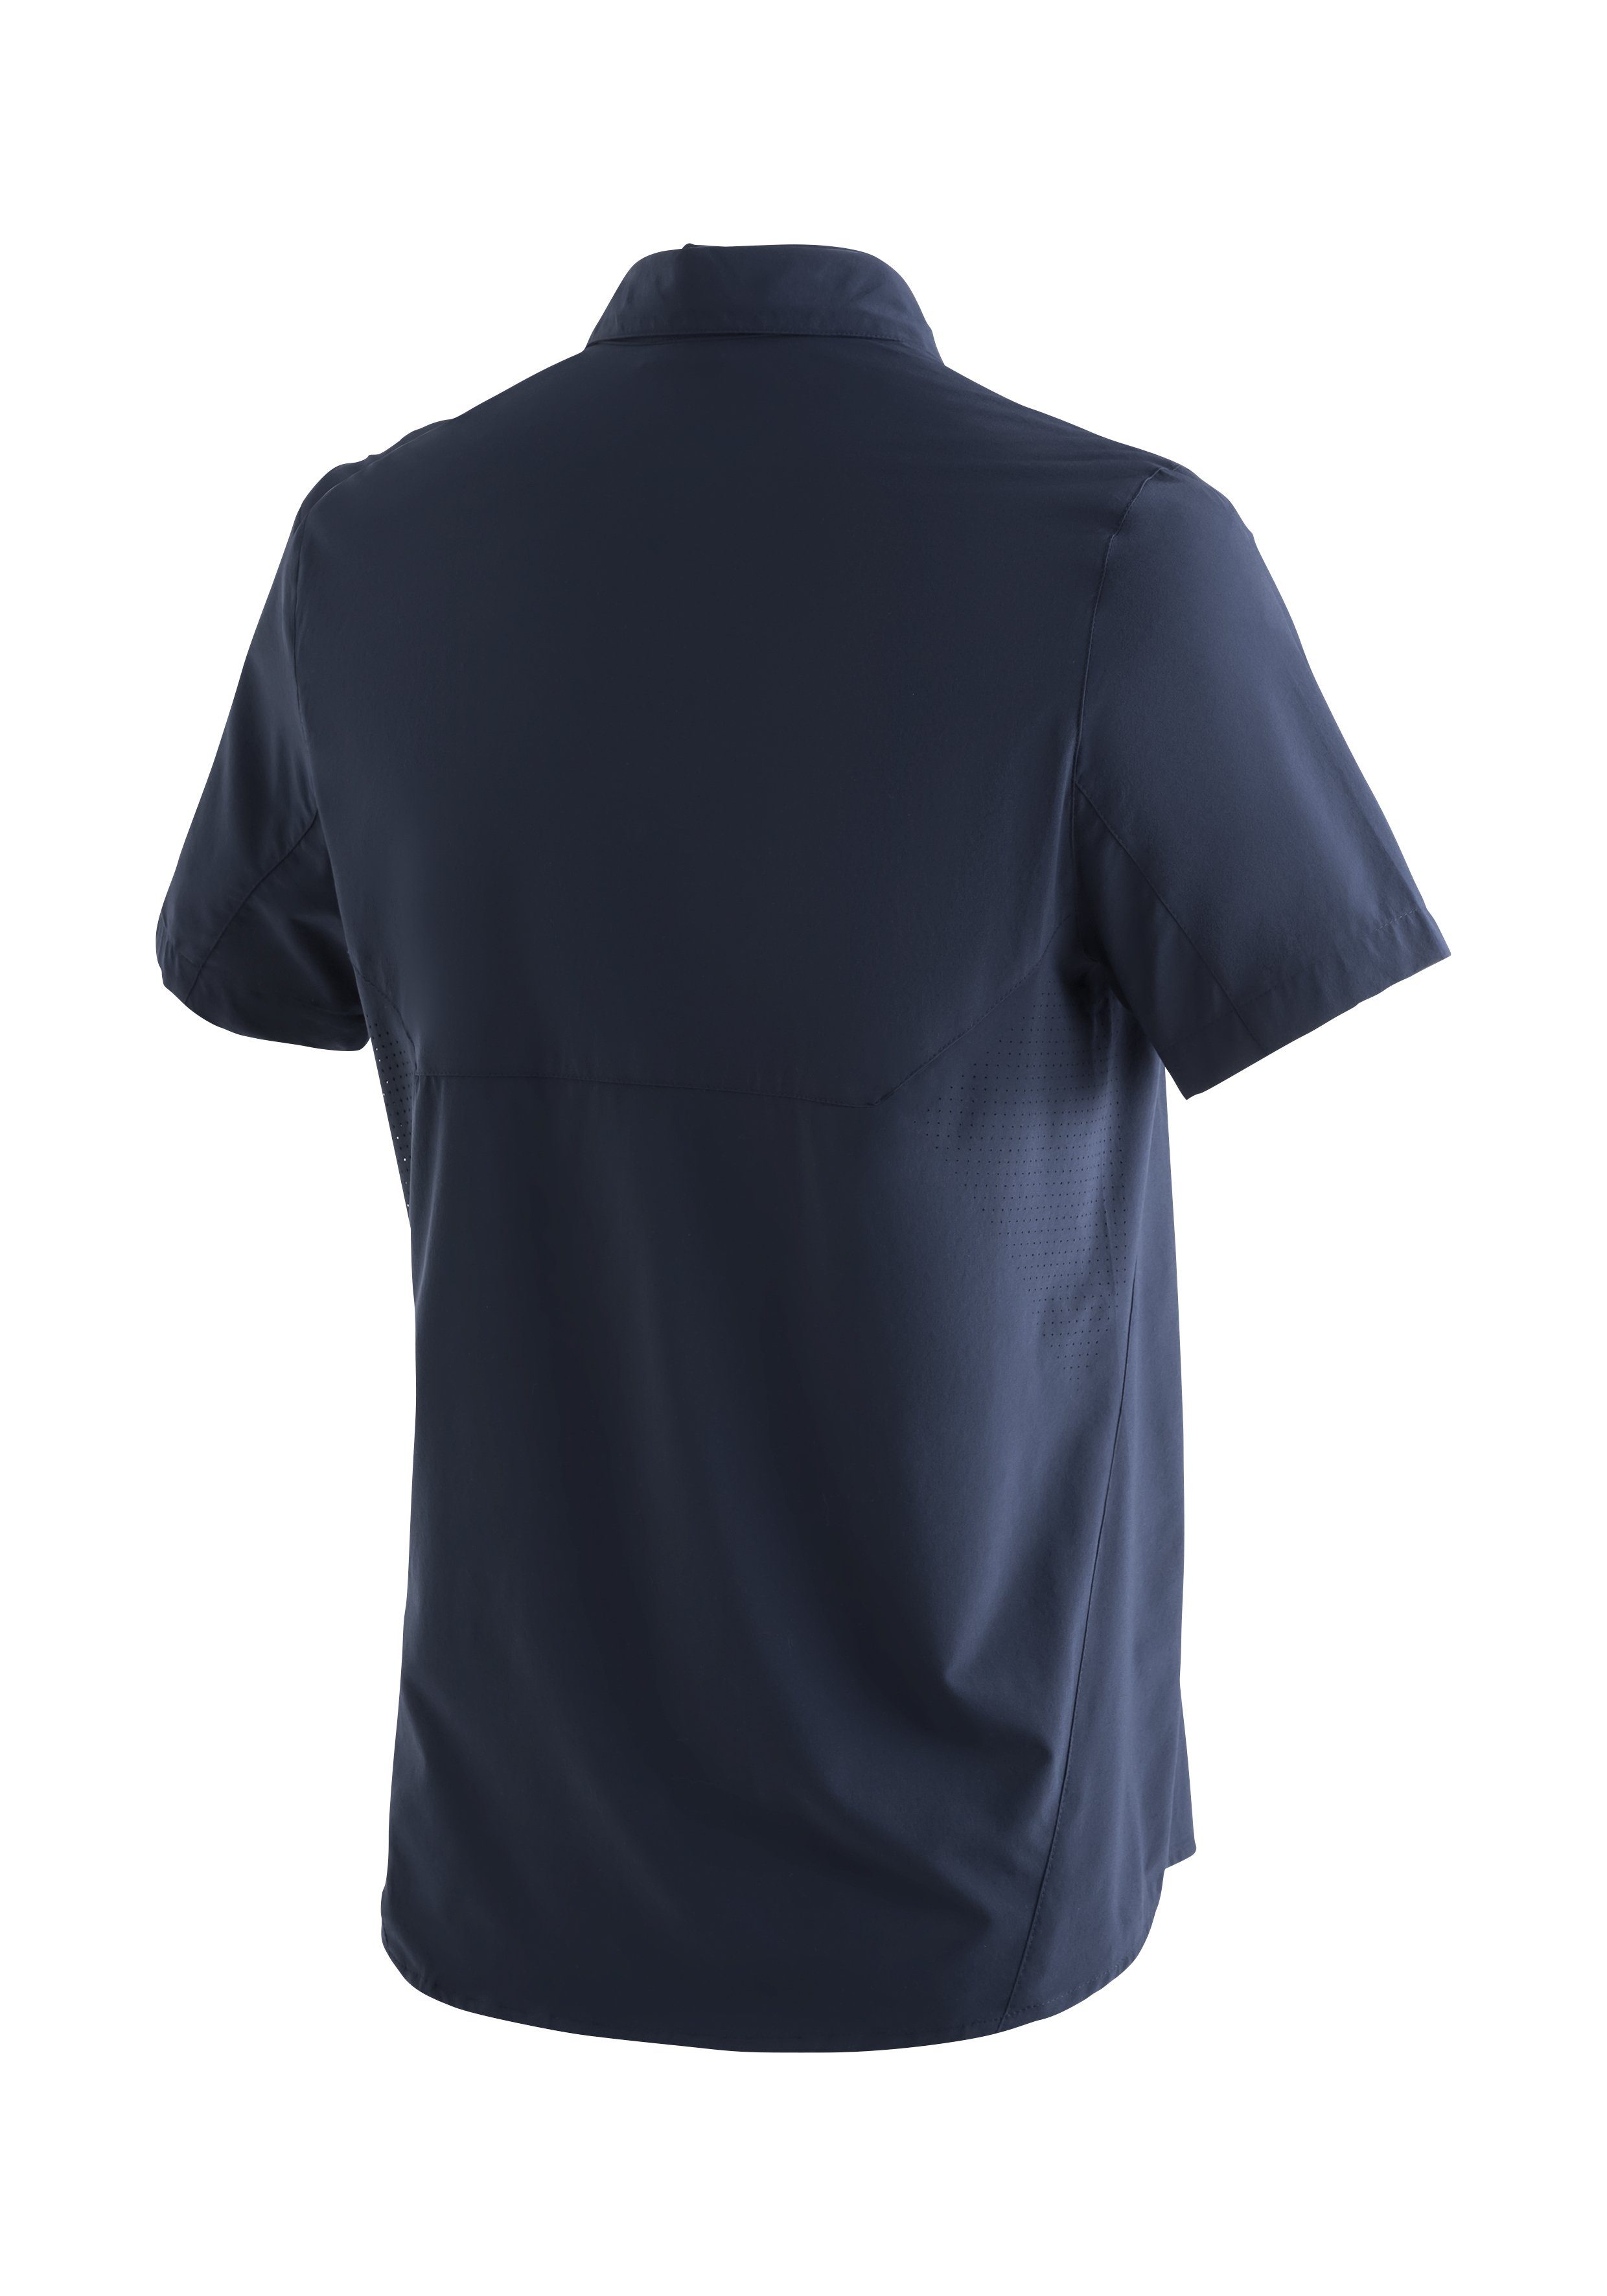 Sports mit Sonnenkragen Trekkinghemd elastisches Sinnes Funktionshemd dunkelblau MS/S Maier Leichtes, Tec